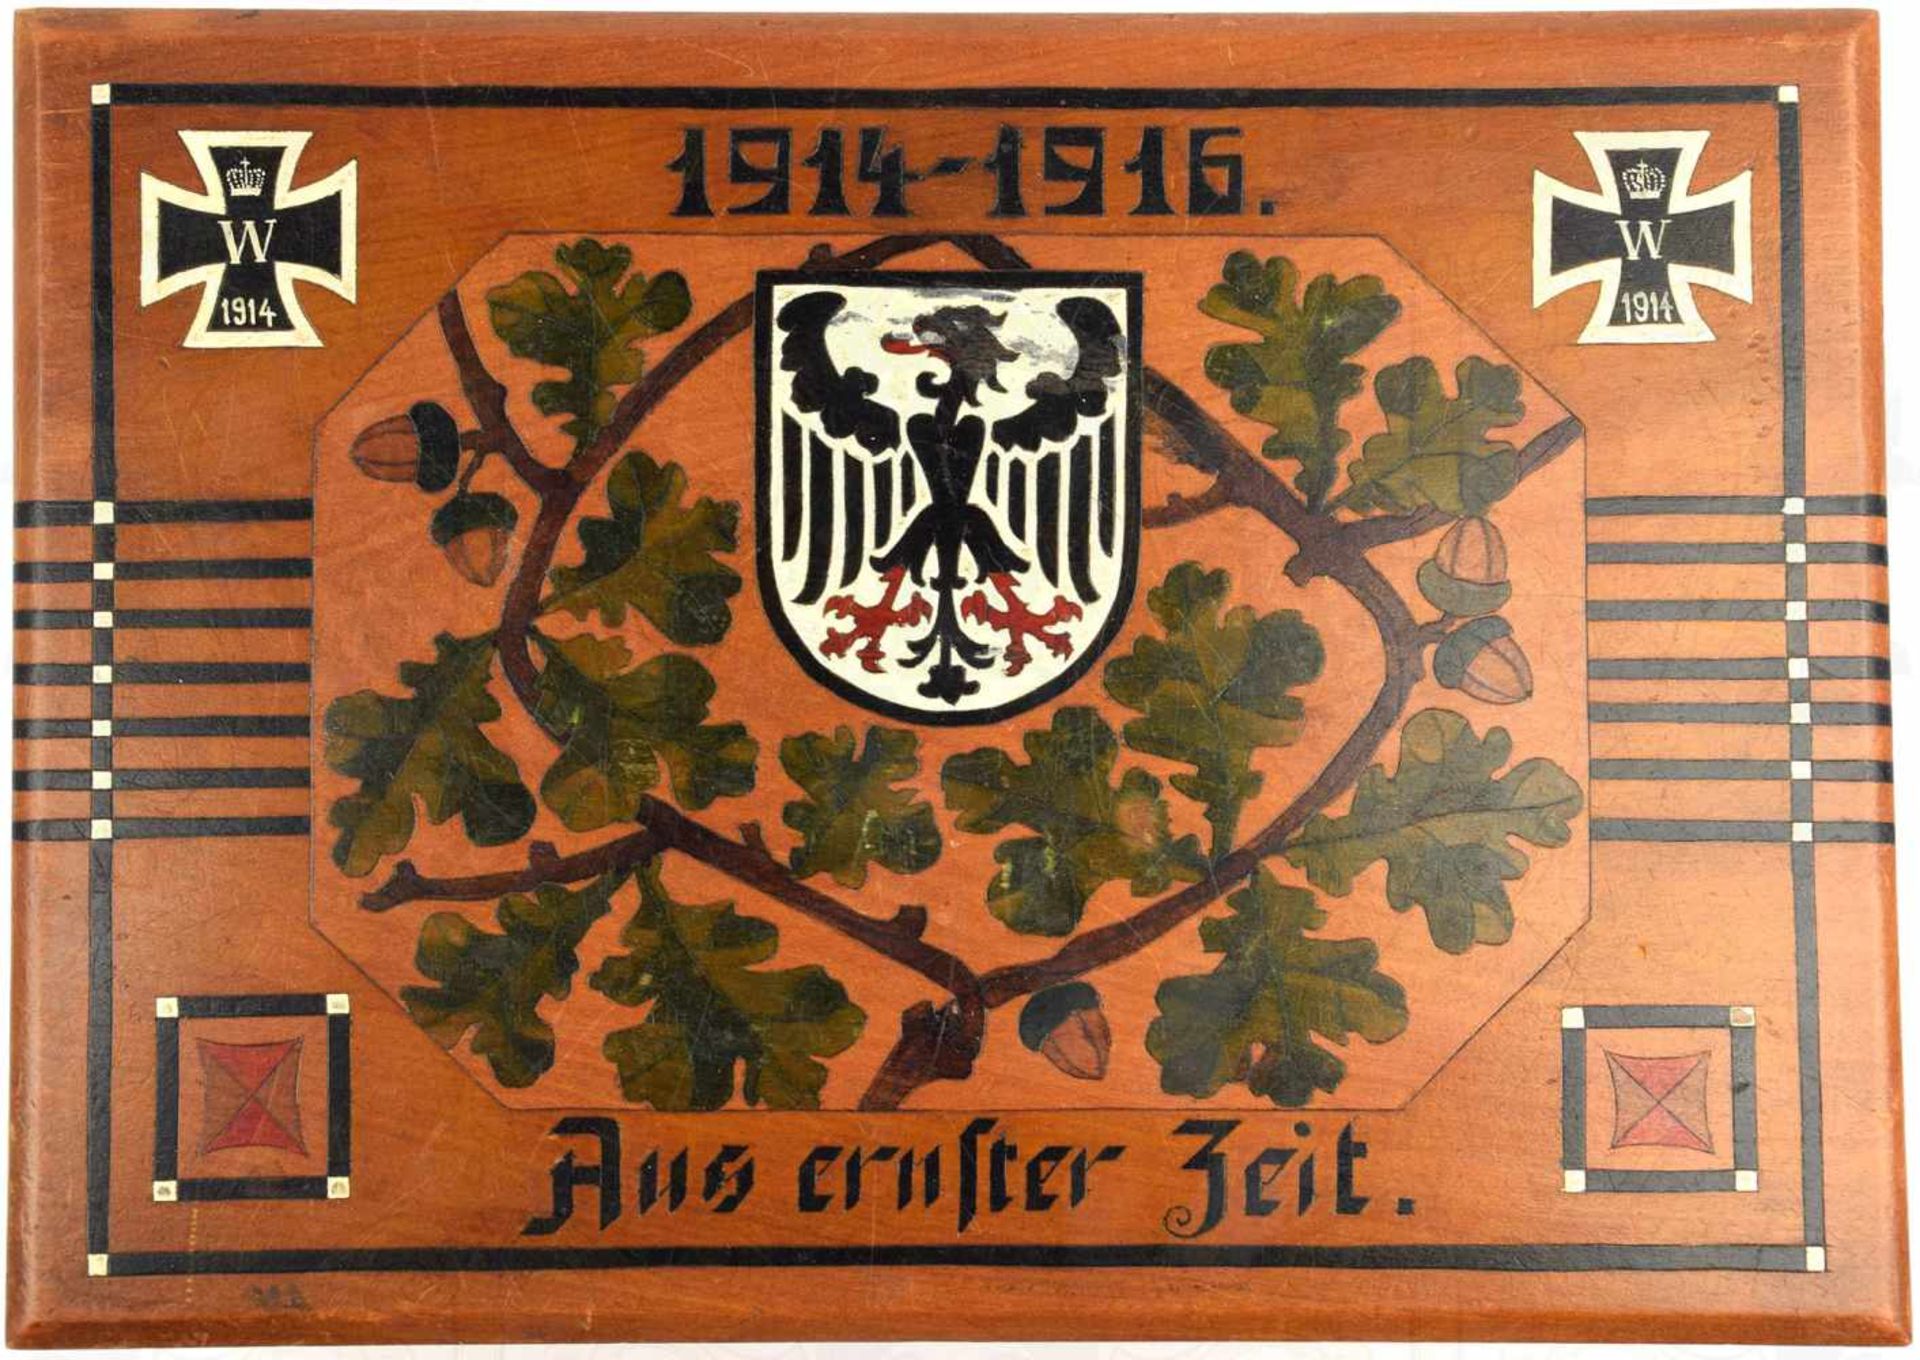 PATRIOTISCHE SCHATULLE, Holz, Deckel m. Intarsien, 2 EK 1914, Adler im Wappenschild u. Eichenbrüche, - Image 2 of 3